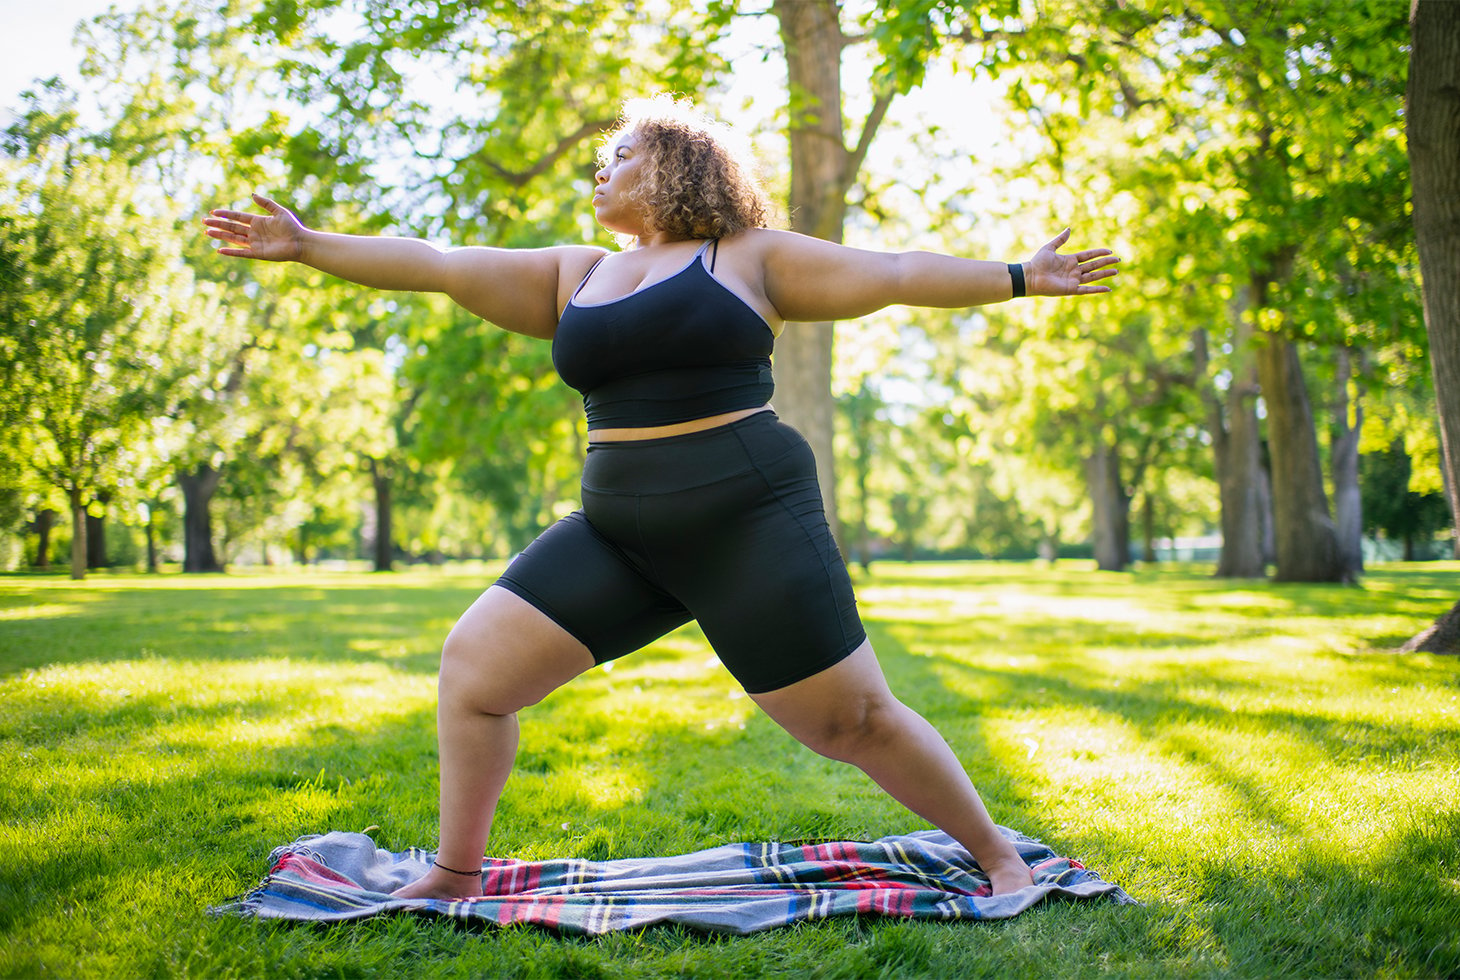 Une femme en surpoids pratiquant du yoga dans un parc. Une activité physique à faible impact pour le périnée et permettant de lutter contre la surcharge pondérale.